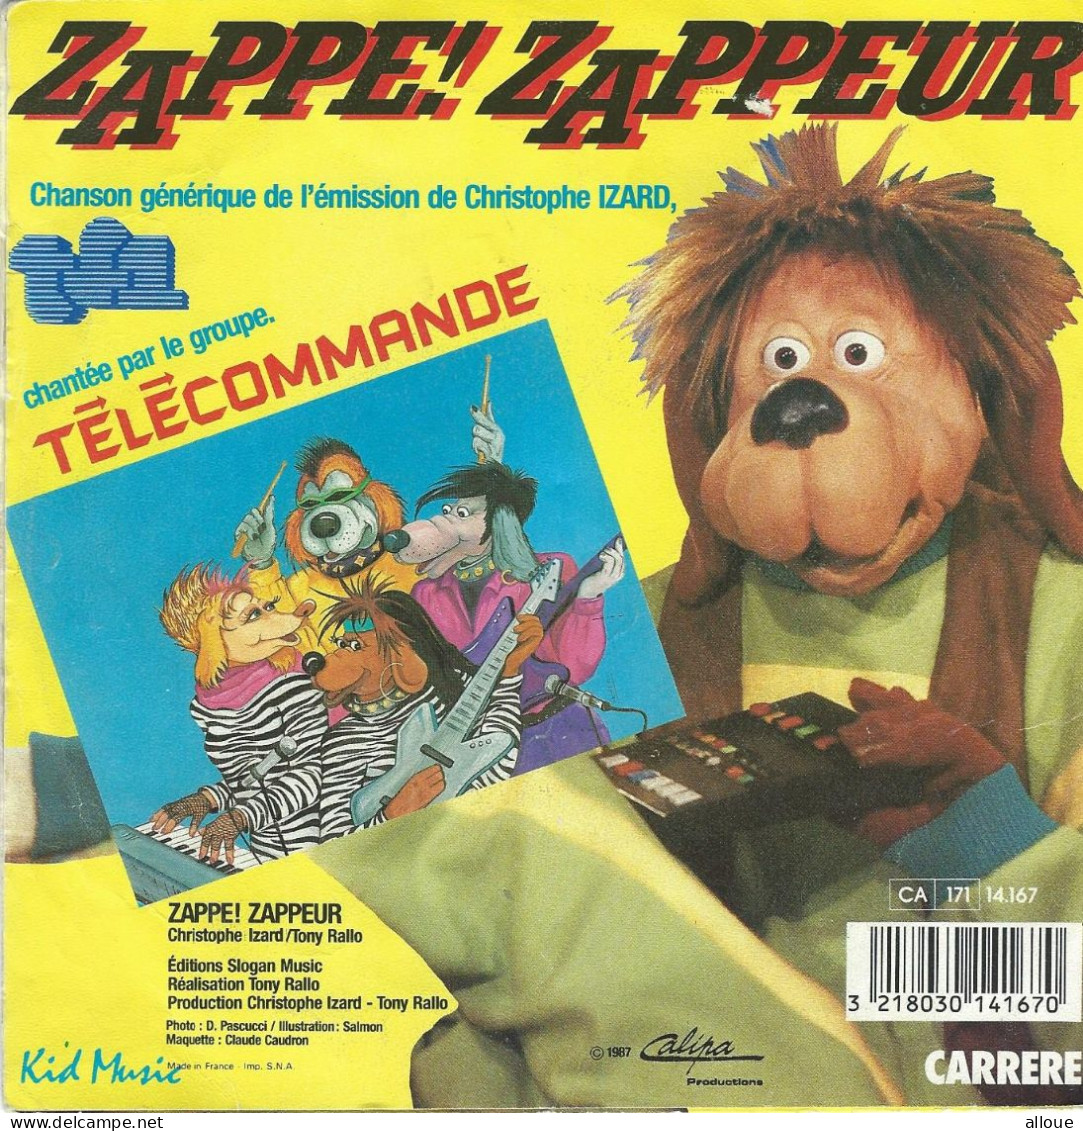 TELECOMMANDE - FR SG - GENERIQUE TELE - ZAPPE! ZAPPEUR + 1 - Soundtracks, Film Music